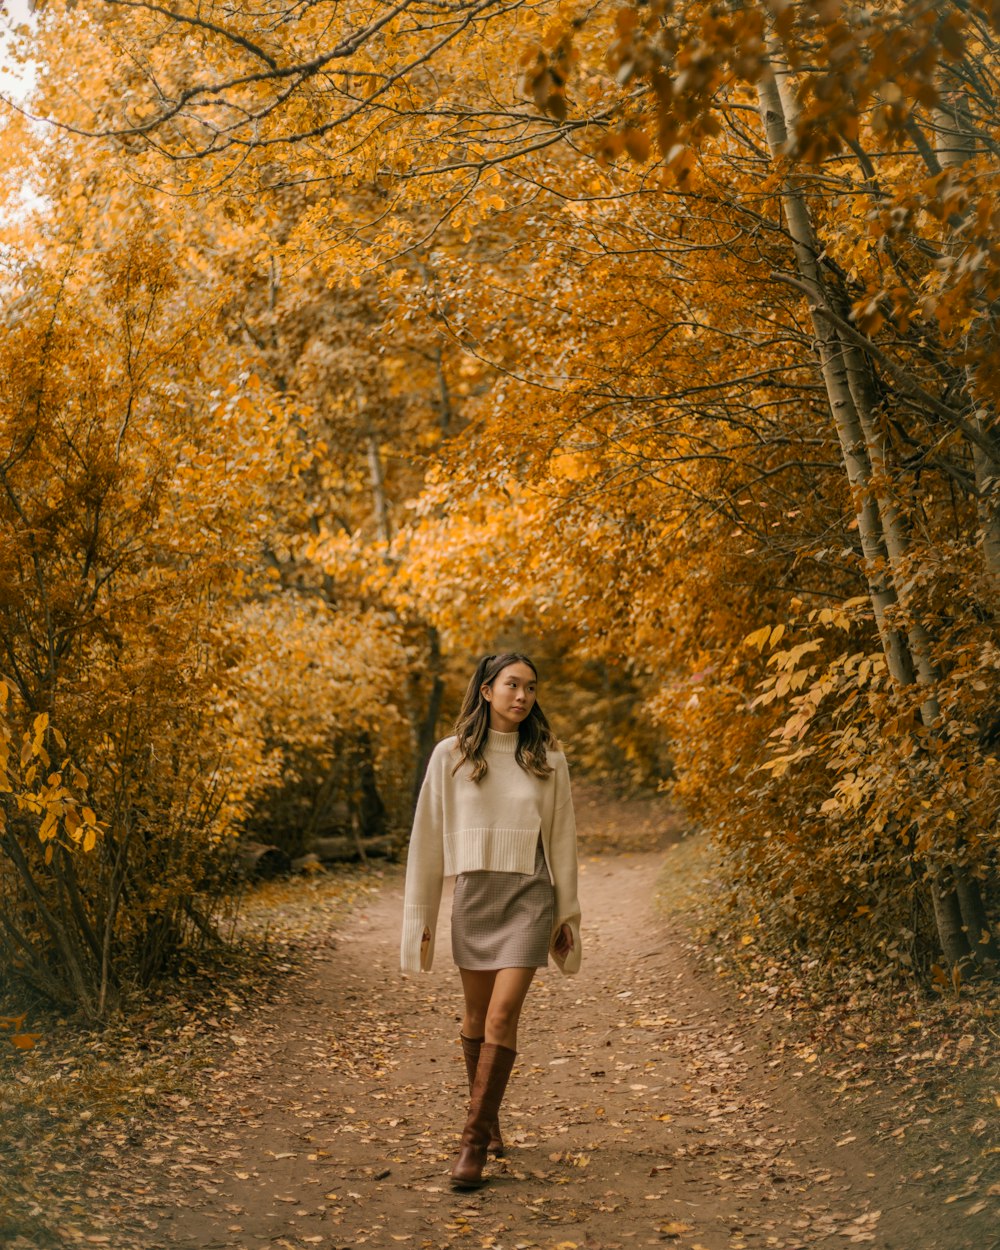 Eine Frau geht einen Feldweg entlang, umgeben von Bäumen